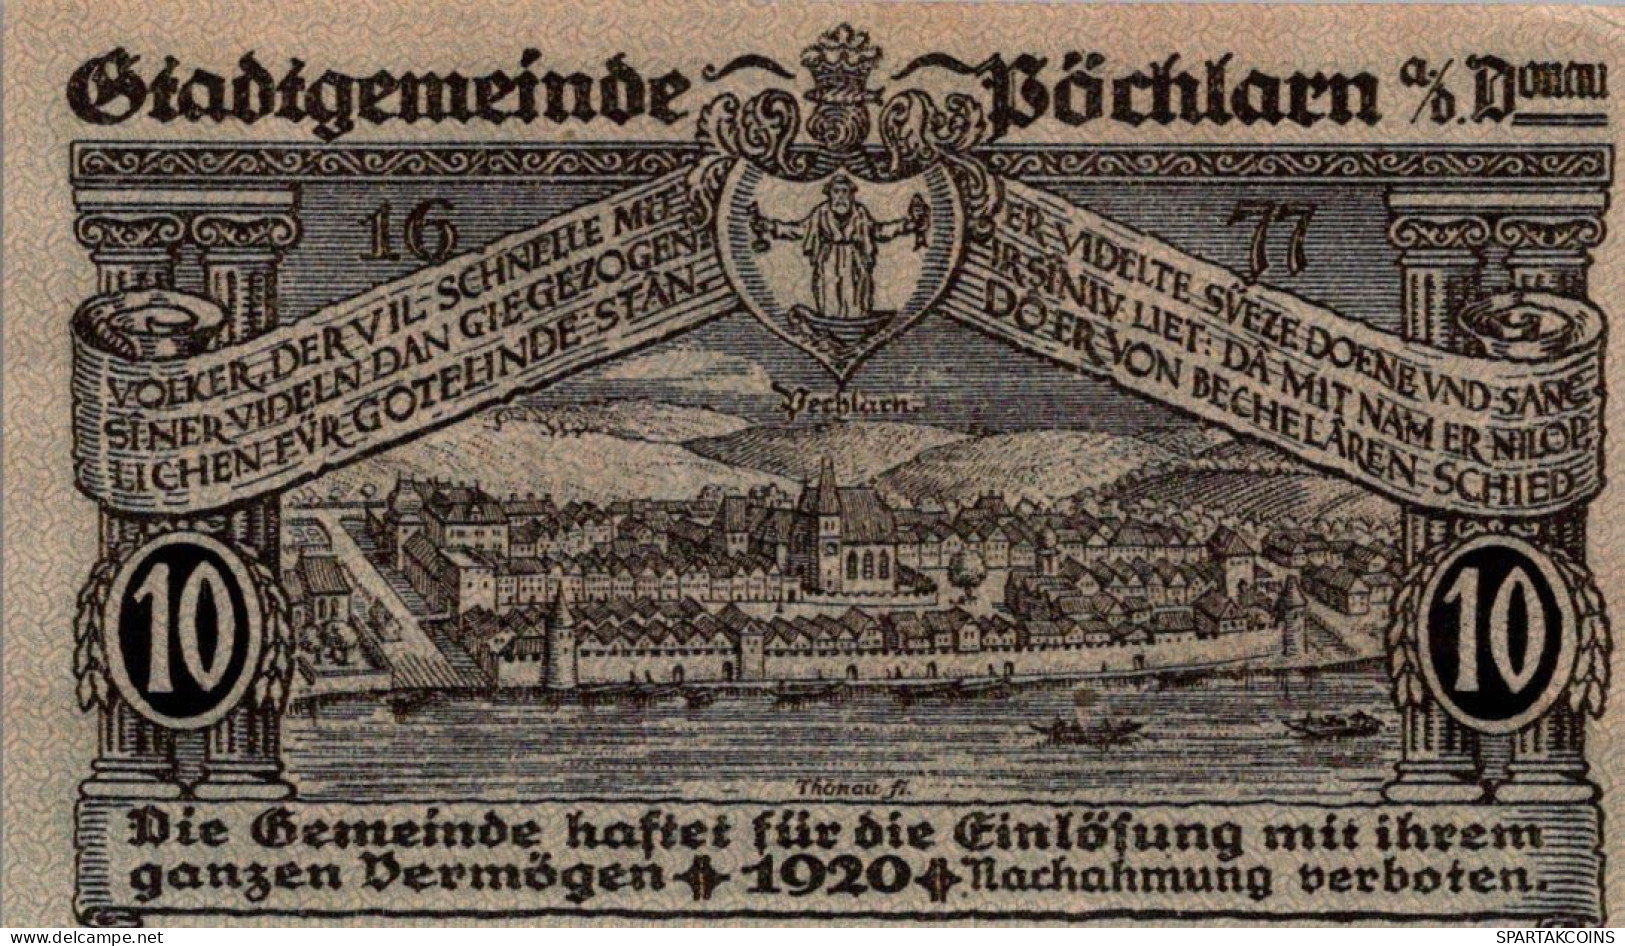 10 HELLER 1920 Stadt PoCHLARN Niedrigeren Österreich Notgeld Banknote #PE284 - [11] Lokale Uitgaven